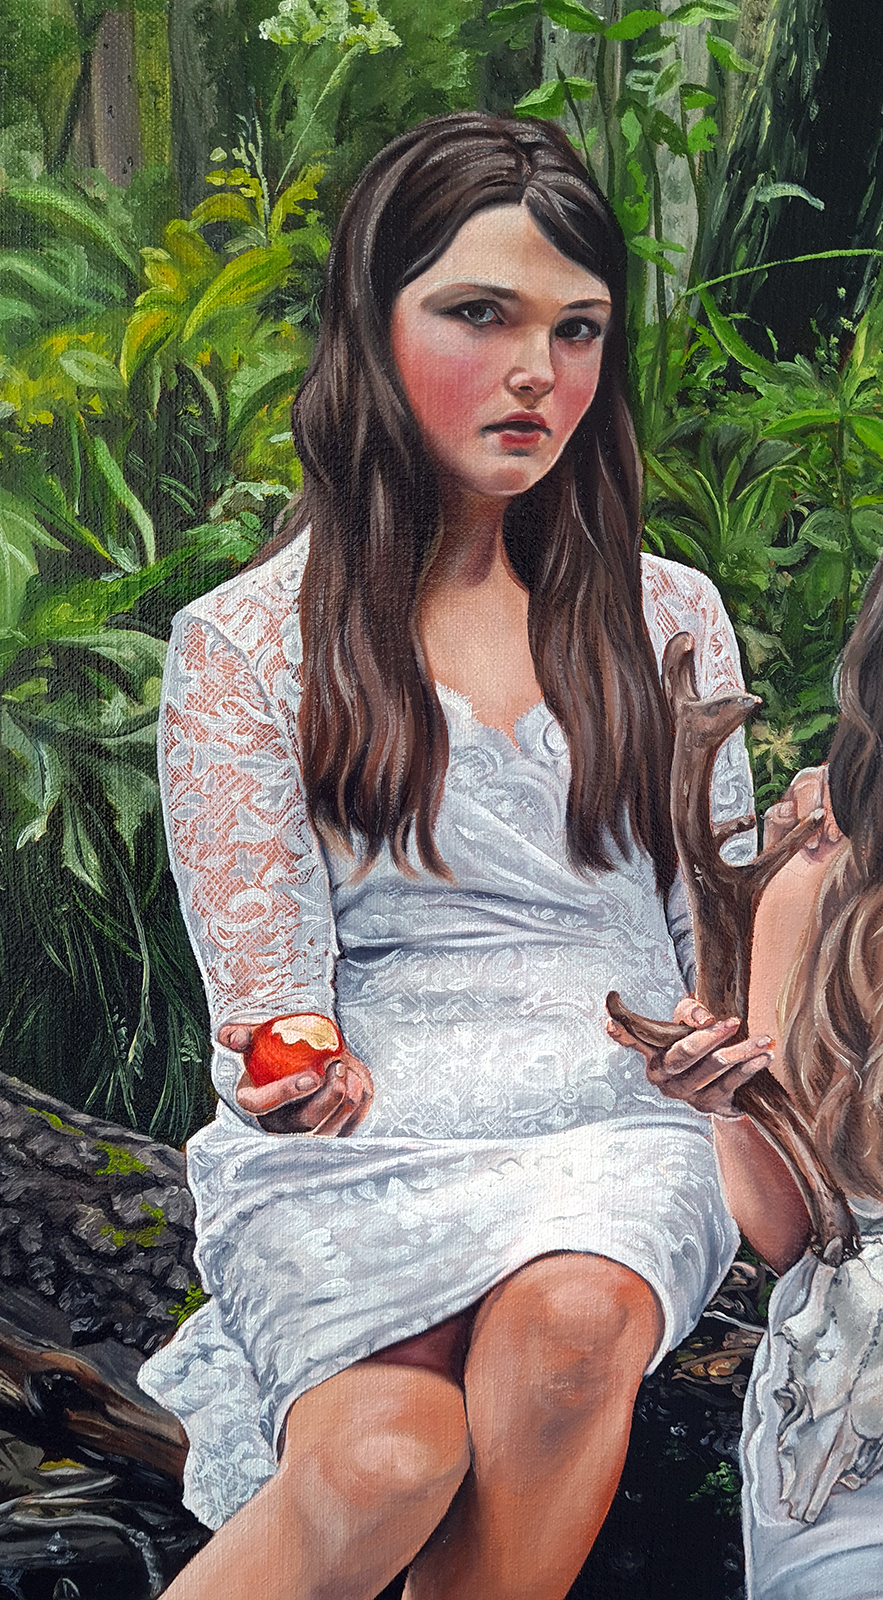 girl holding apple log white dress woods forest painting oil christina ridgeway art